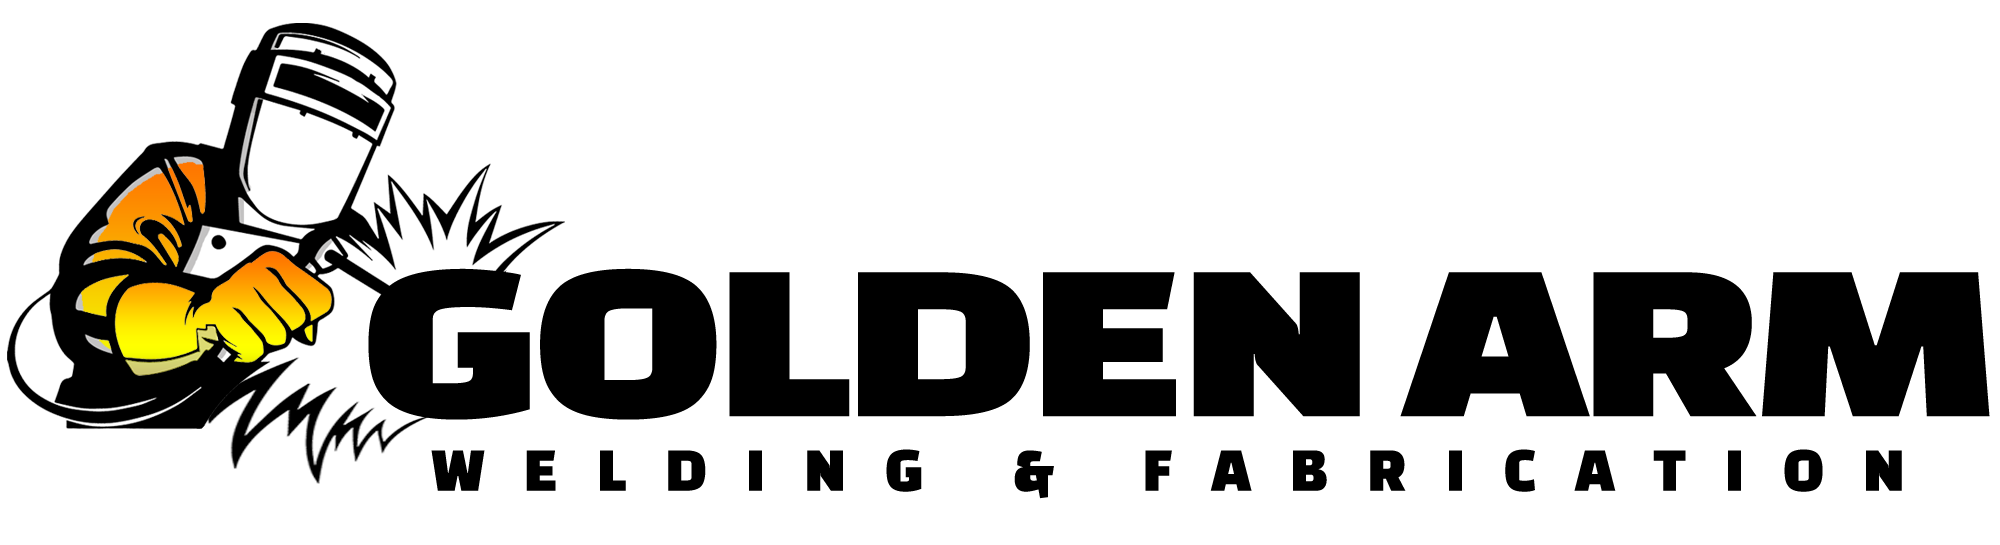 Golden Arm Welding & Fabrication